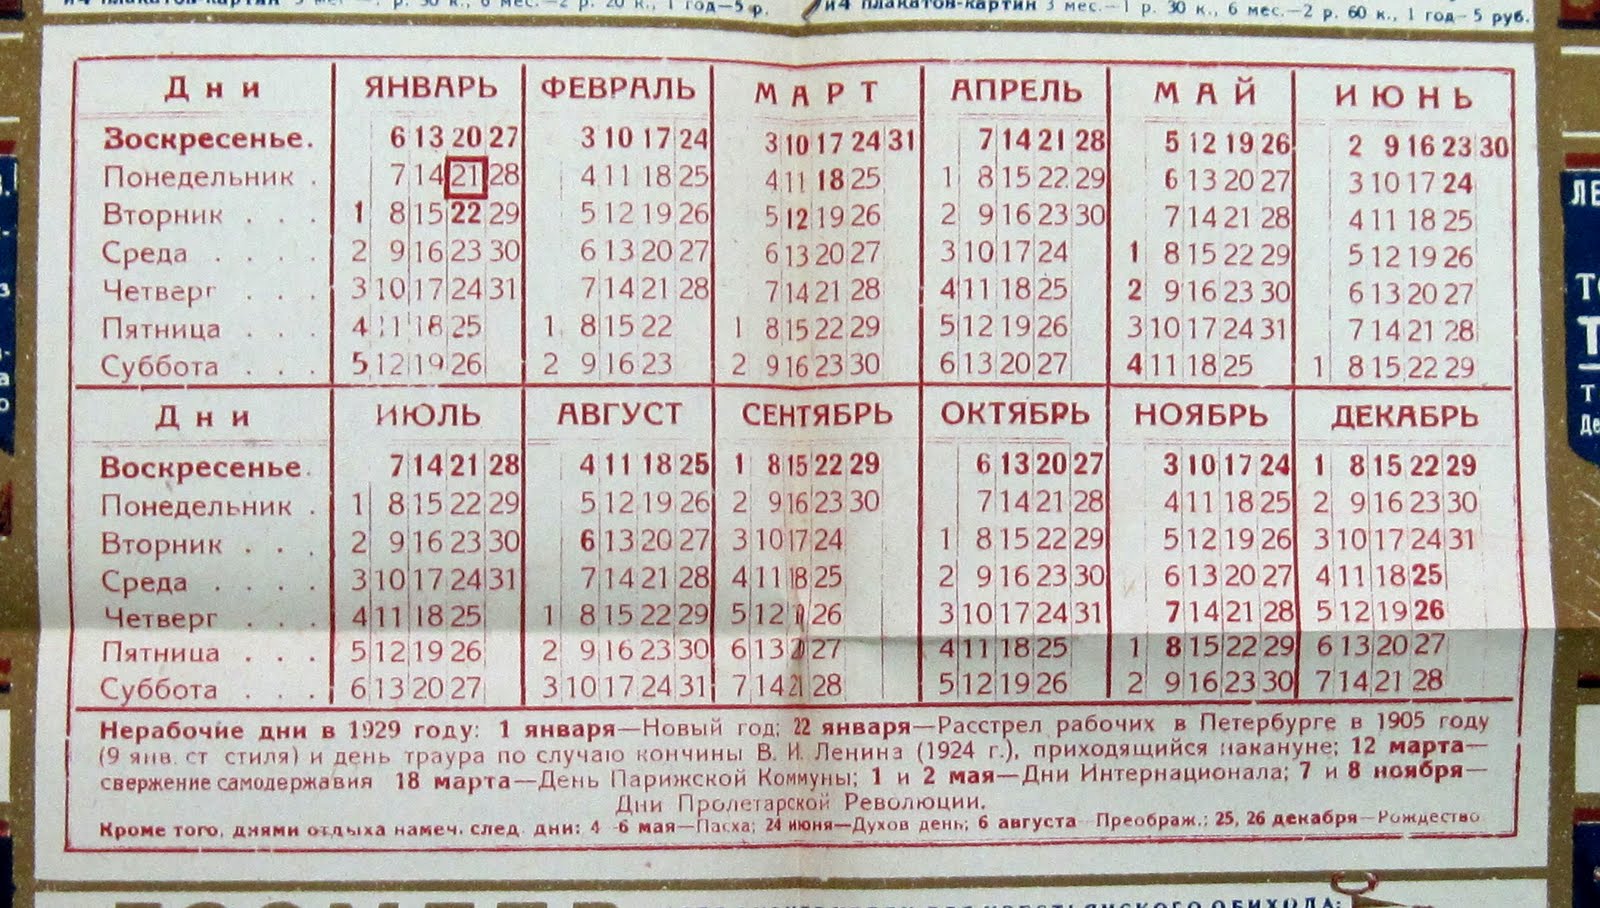 Какой был день недели 1961 году. Календарь праздников 1929 года. Календарь советских праздников. Табель календарь 1929 года. Табель календарь на 1930 год.